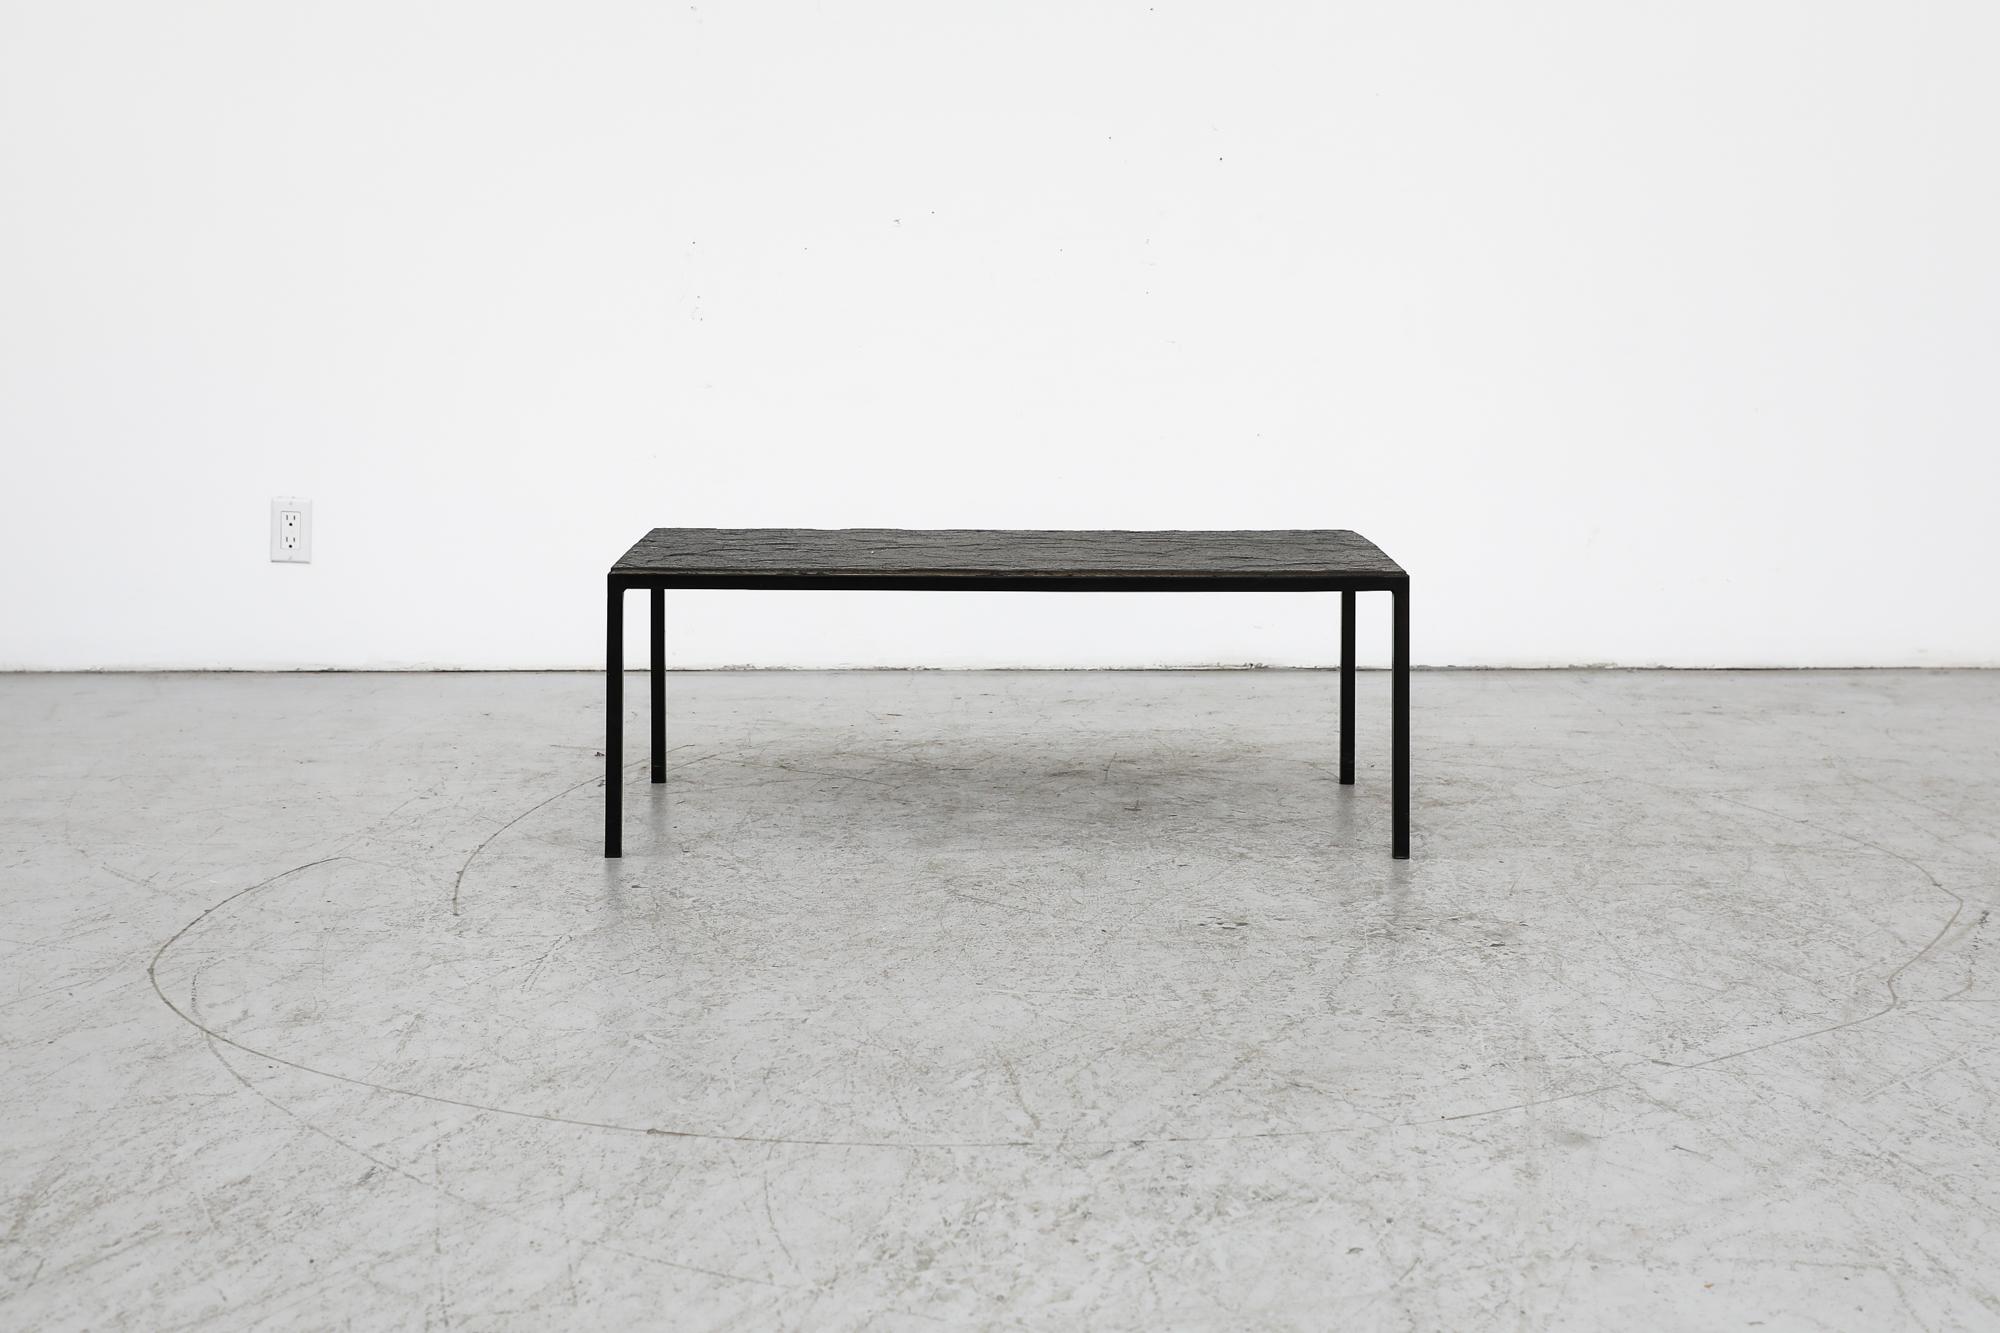 Table basse ou table d'appoint rectangulaire hollandaise des années 1960, fabriquée par Artimeta, avec une fine structure en métal émaillé noir et un plateau en pierre noire.  On pense qu'il s'agit d'un design de Floris Fiedeldij
En état d'origine,